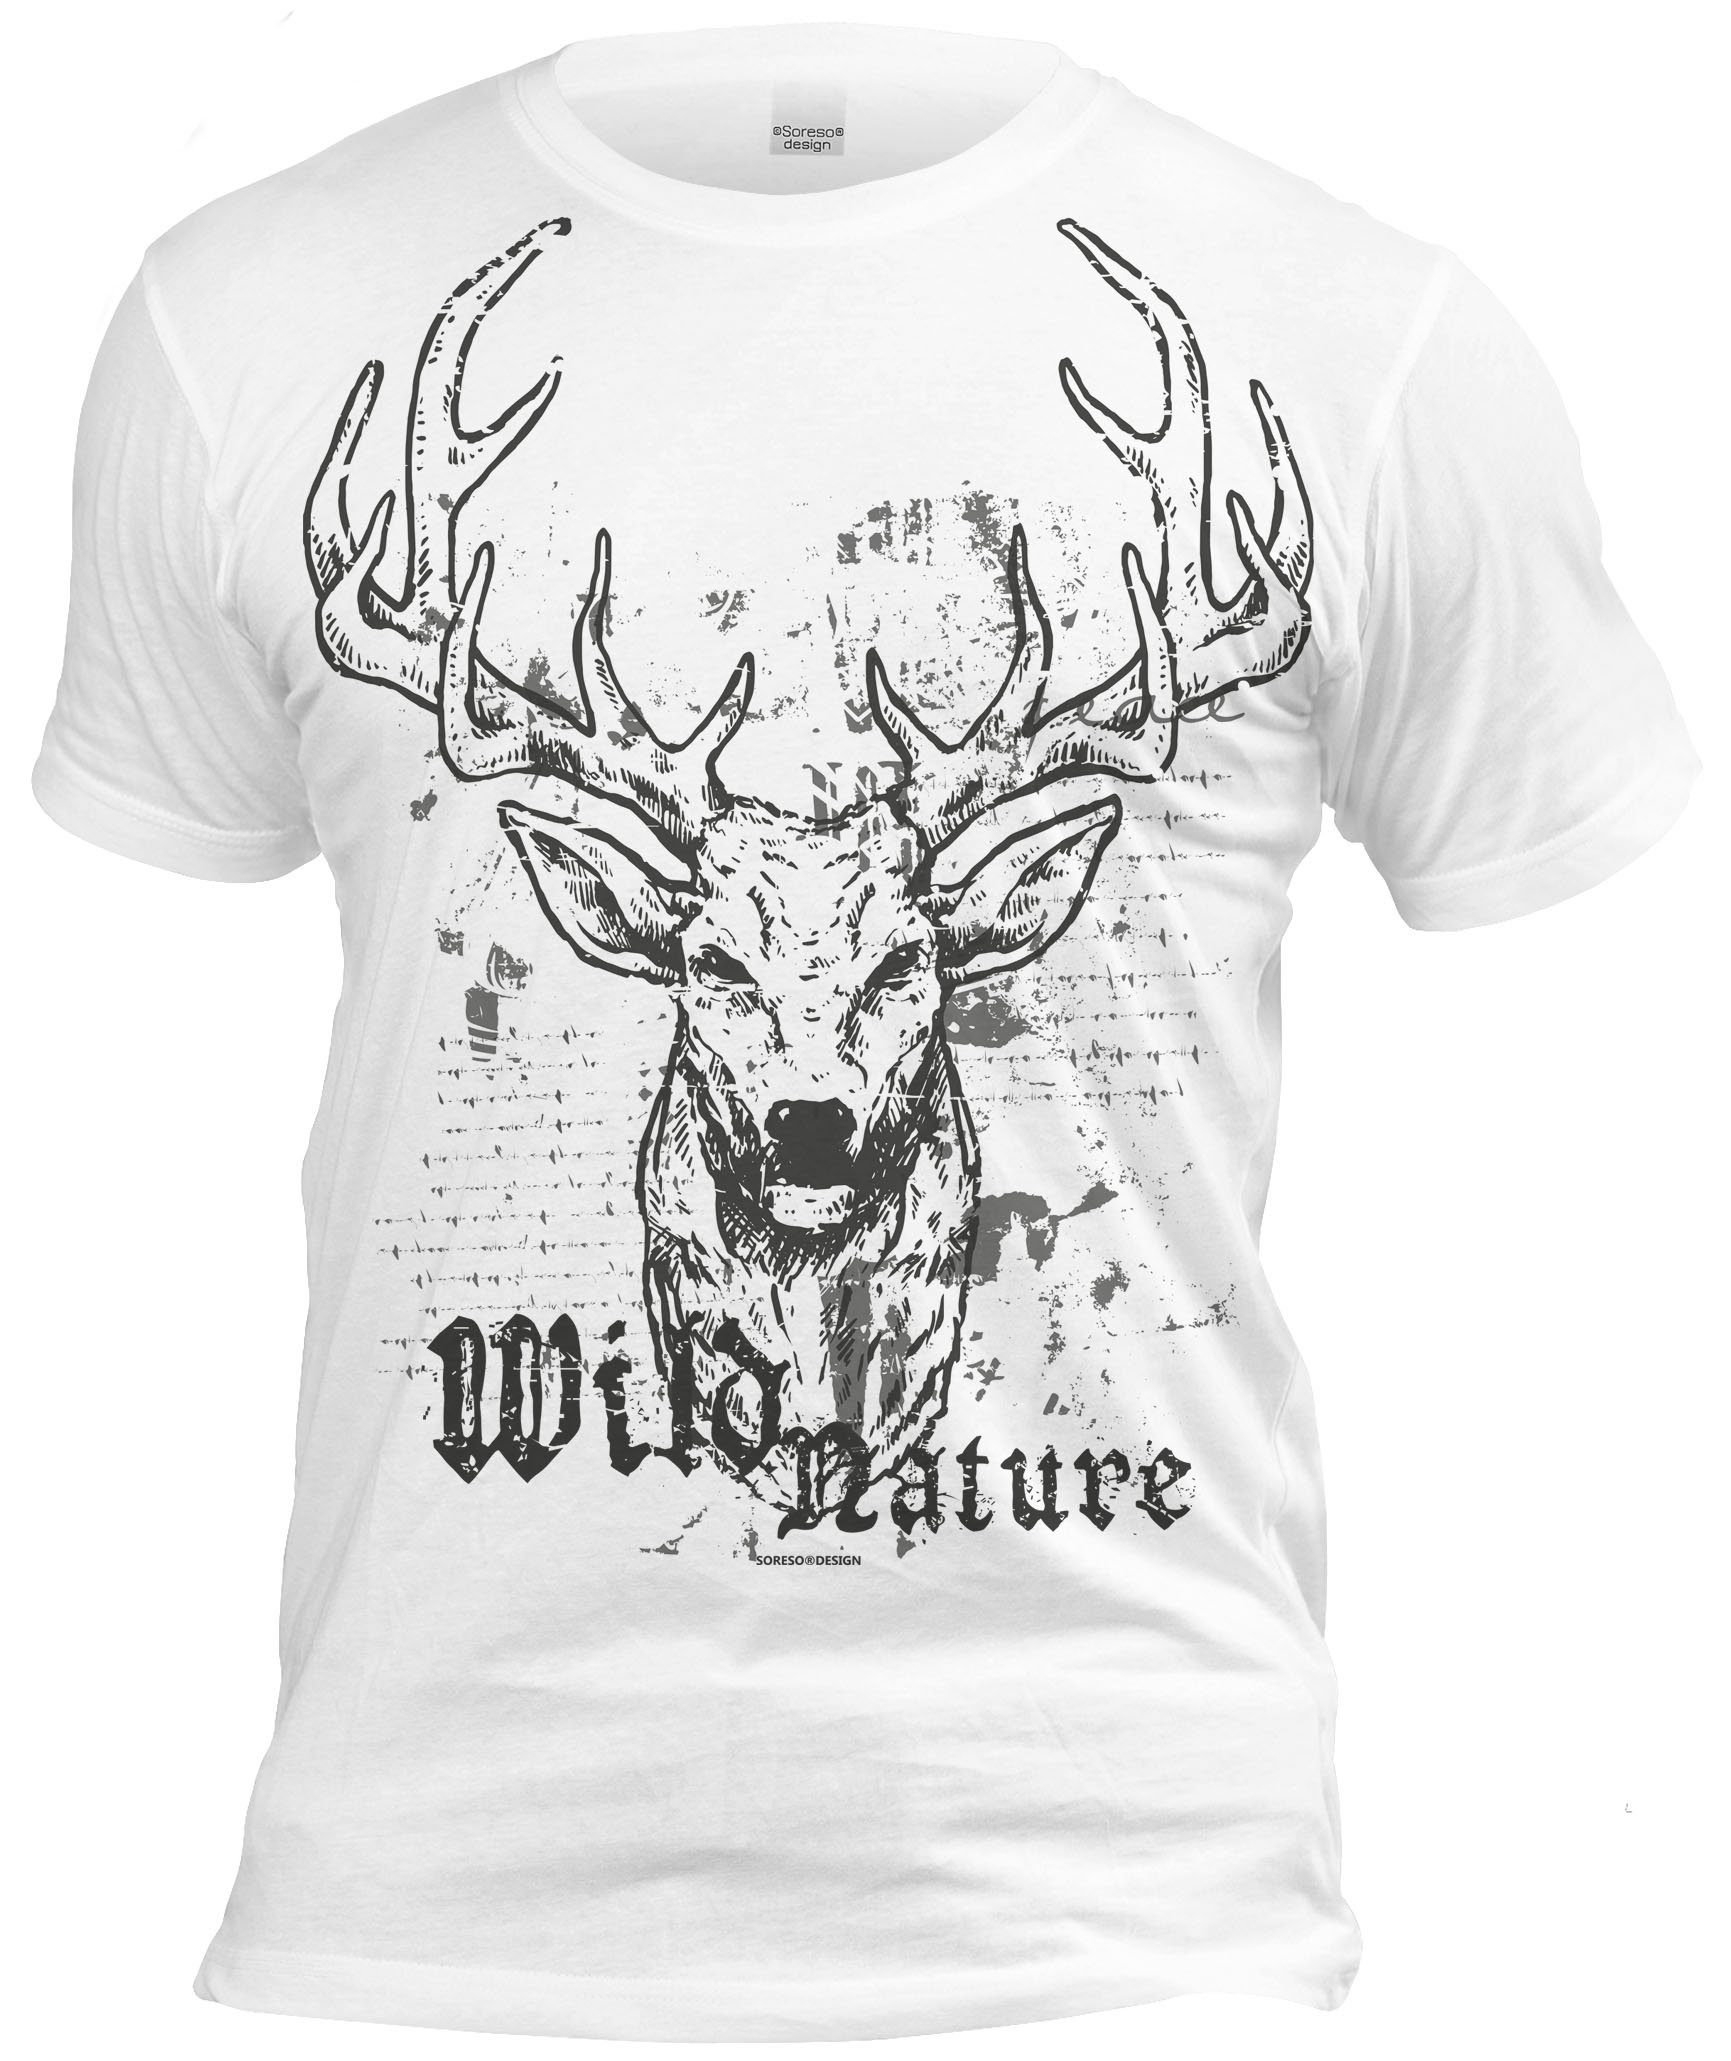 Soreso® T-Shirt Trachtenshirt Wild Nature Herren (Ein T-Shirt) Trachten T-Shirt Männer